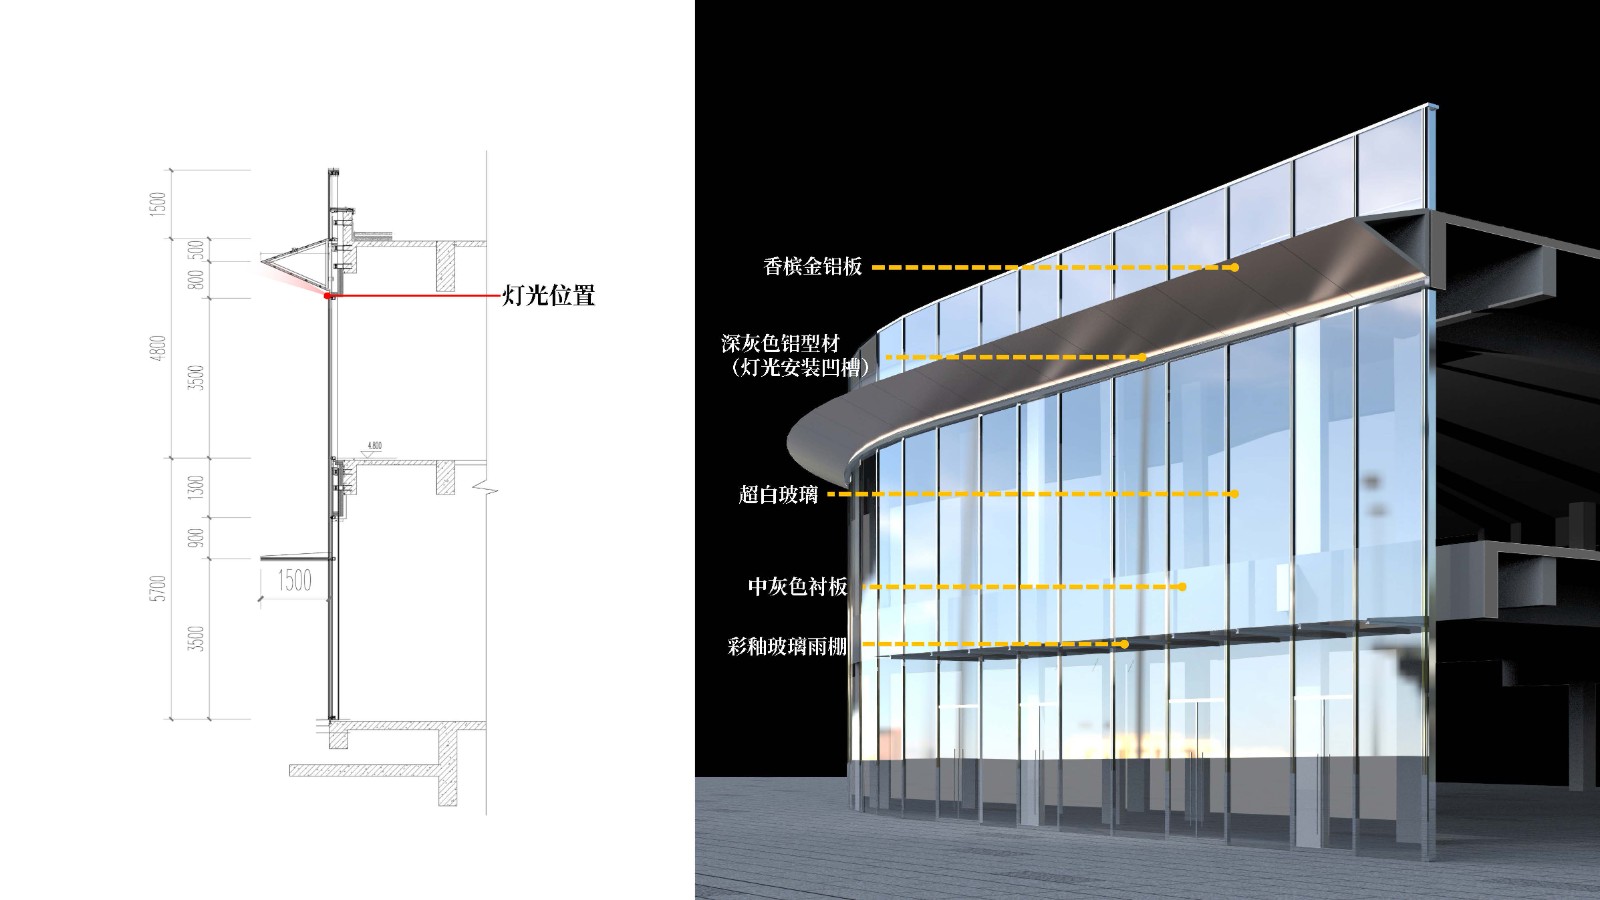 南京金地威新 ▪ 雨花创新中心 建筑设计 / 成执设计